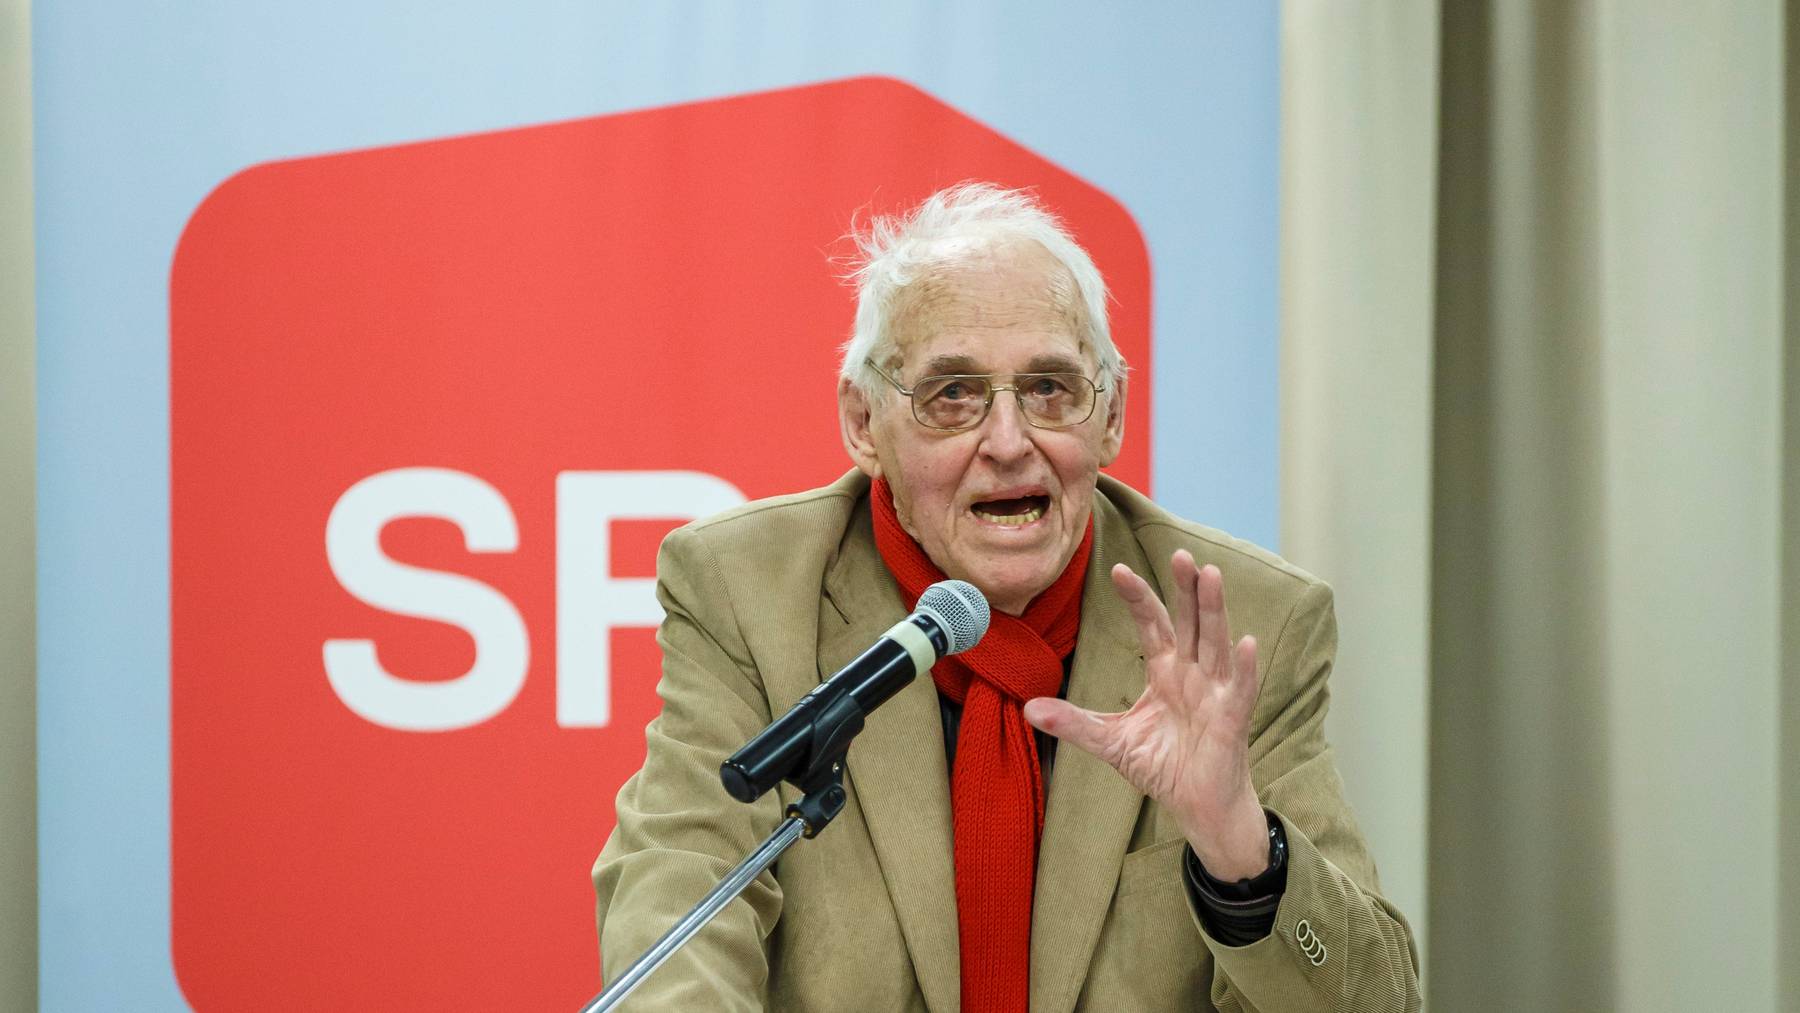 Der langjährige Präsident der SP Schweiz ist 94-jährig verstorben. (Archivbild)